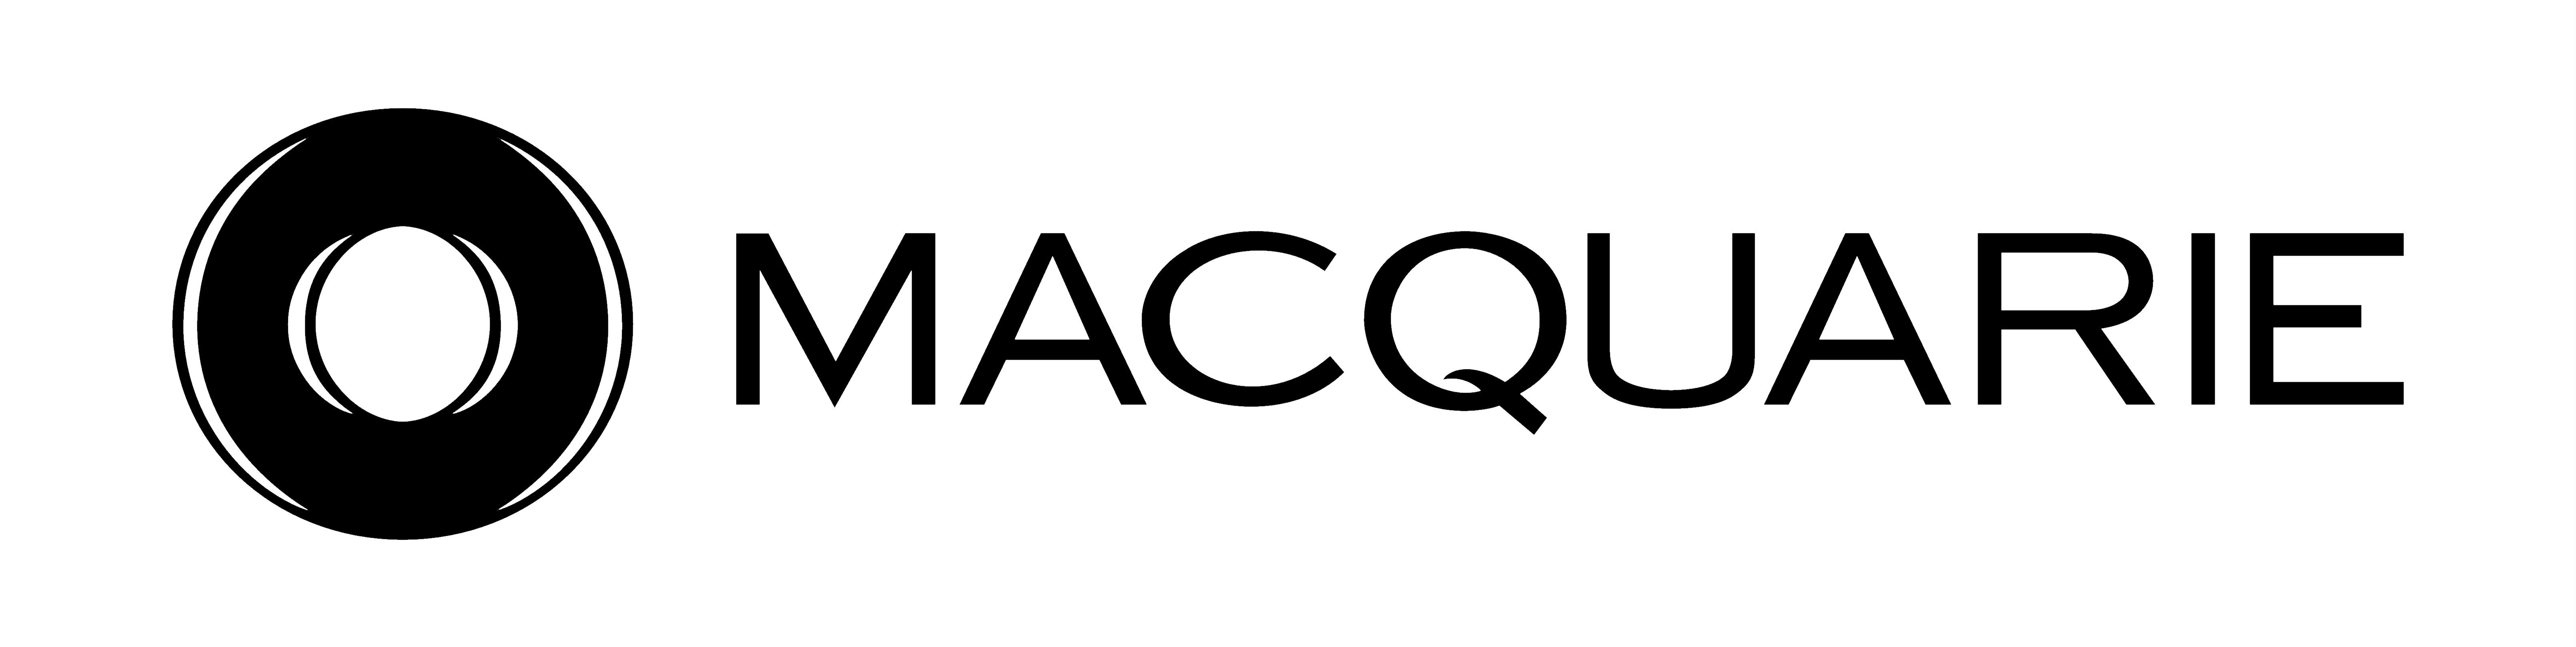 Macquarie Logo Vector PNG - 38062